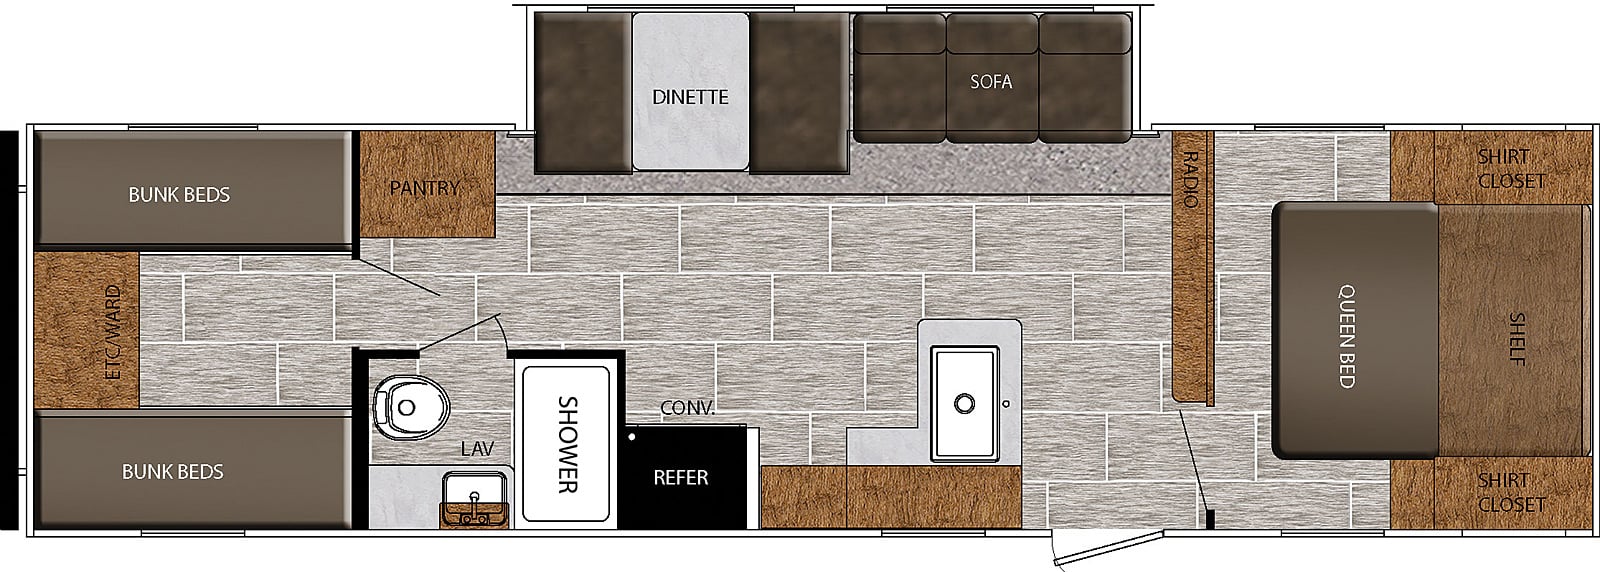 2 bedroom travel trailer floor plans